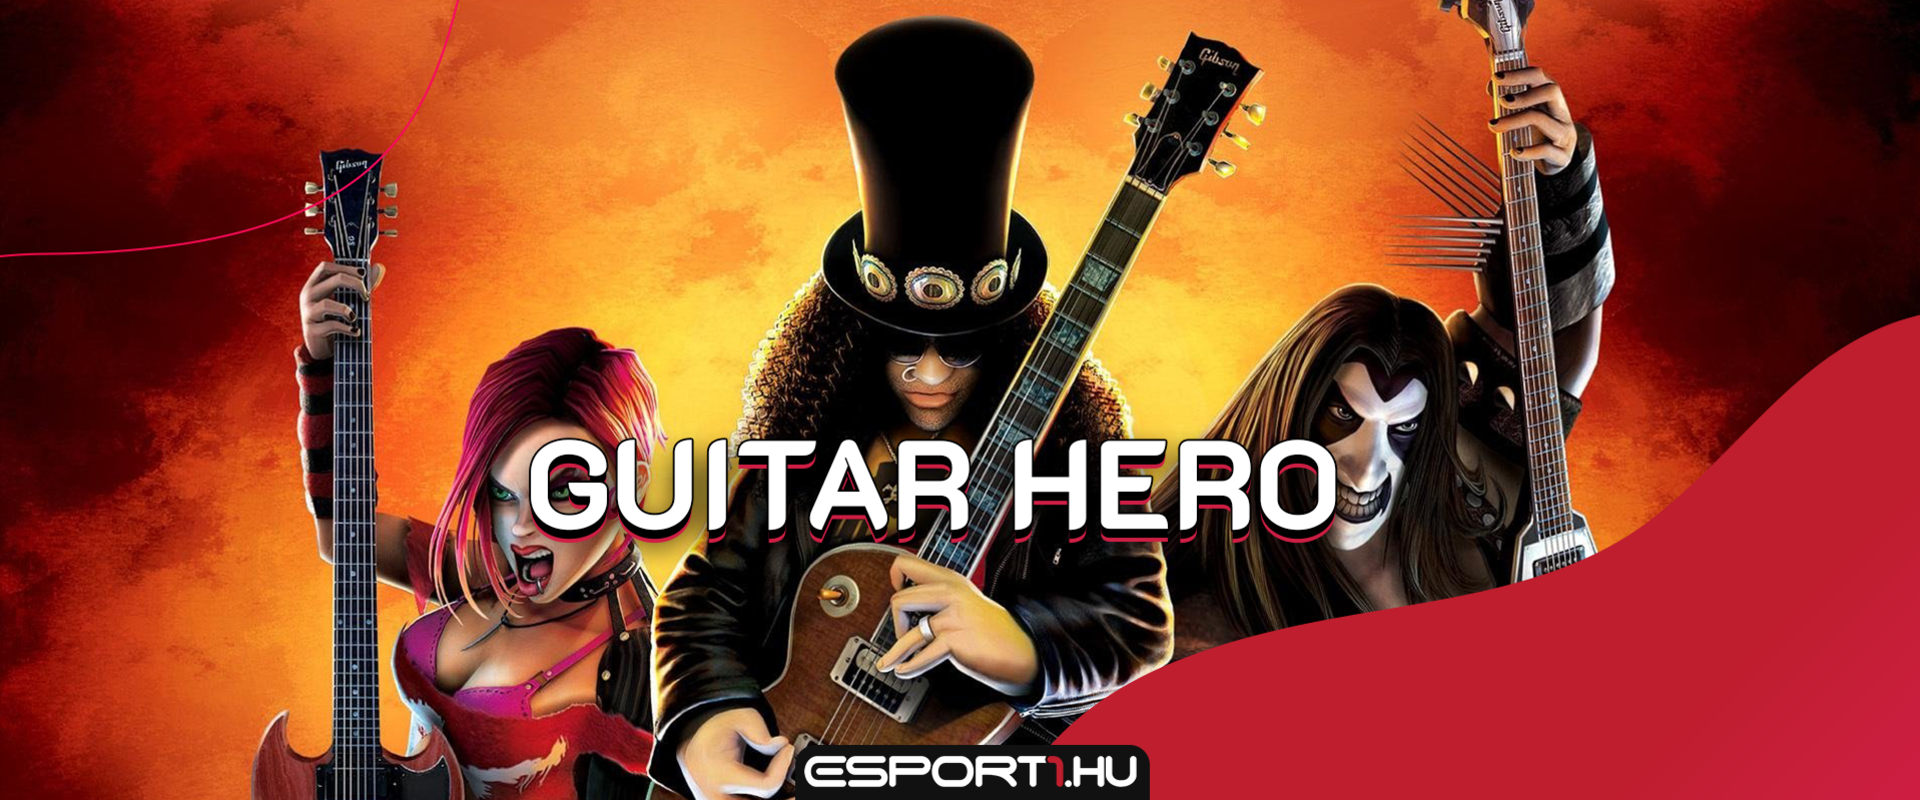 Játéktörténelem -  A 15 éves Guitar Hero tündöklése és bukása